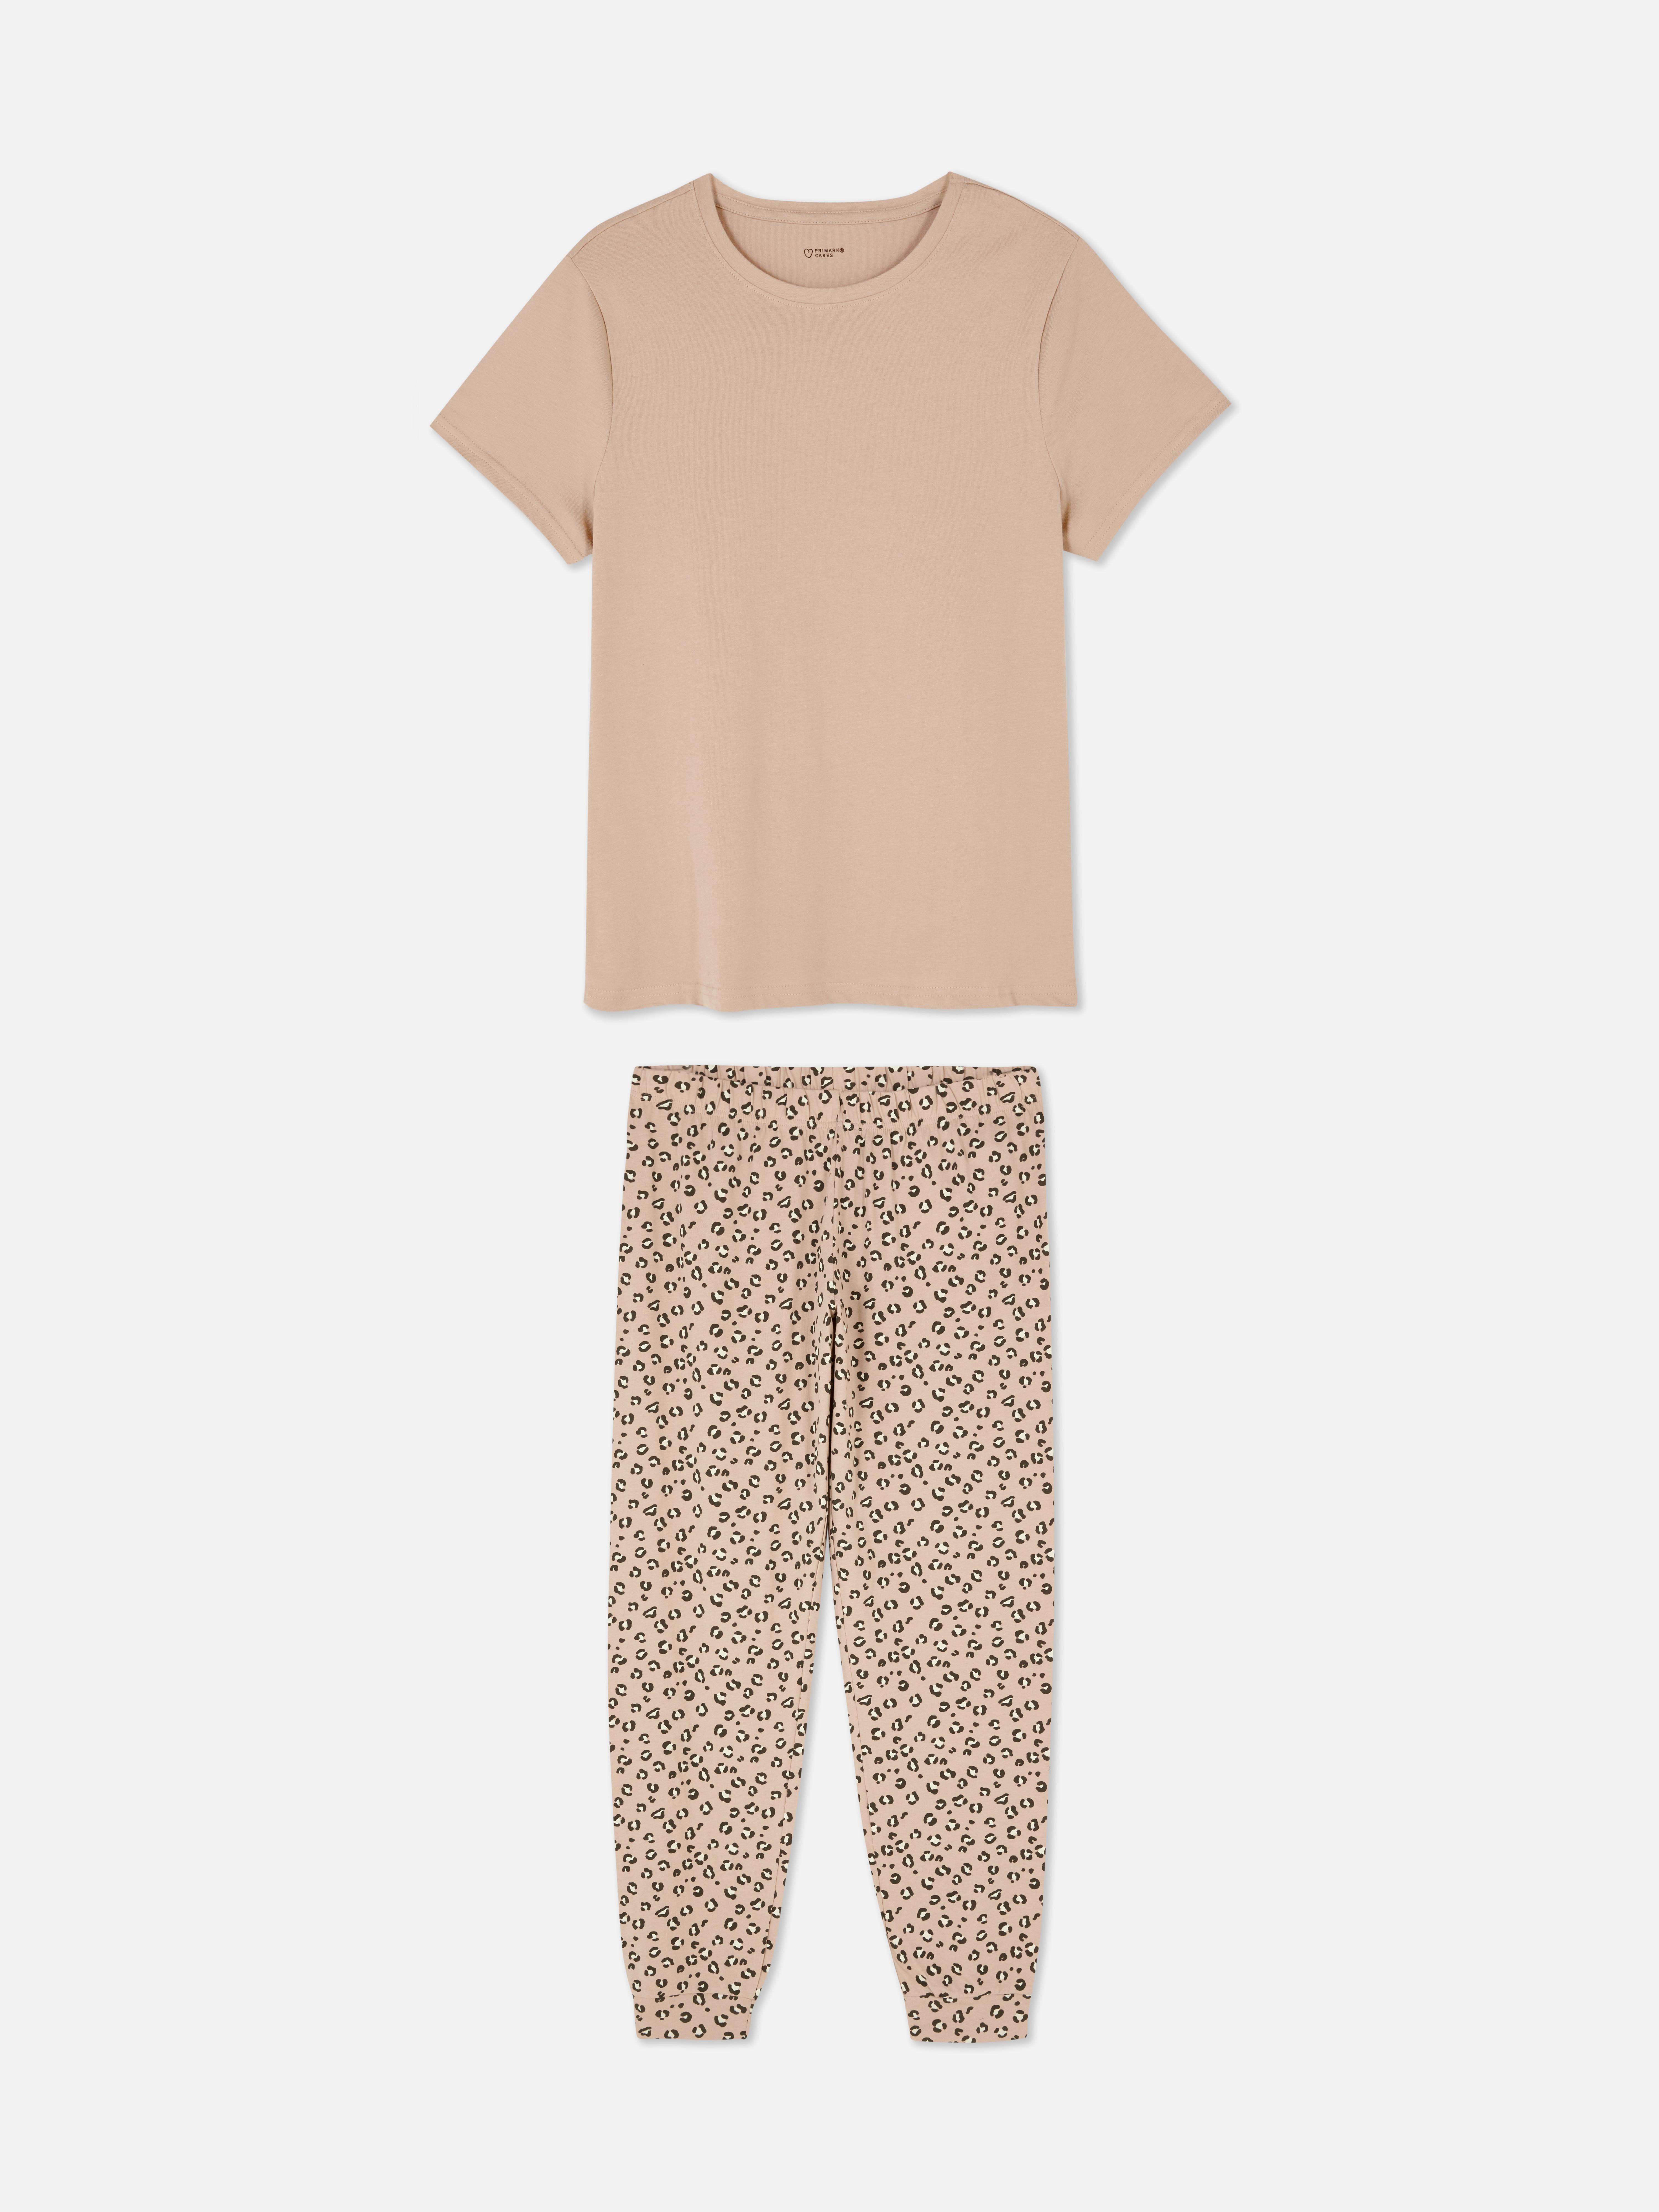 T-Shirt and Joggers Pajamas